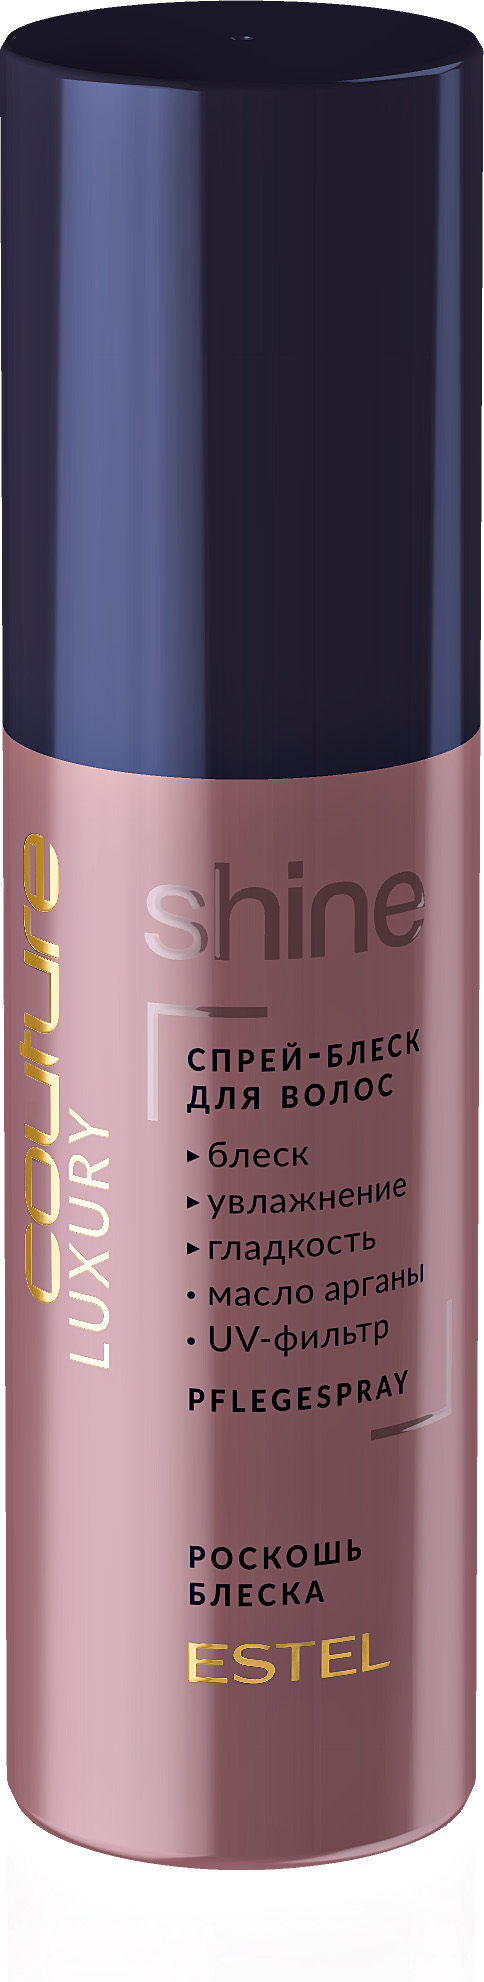 Спрей-блеск для волос LUXURY SHINE ESTEL HC 100 мл NEW